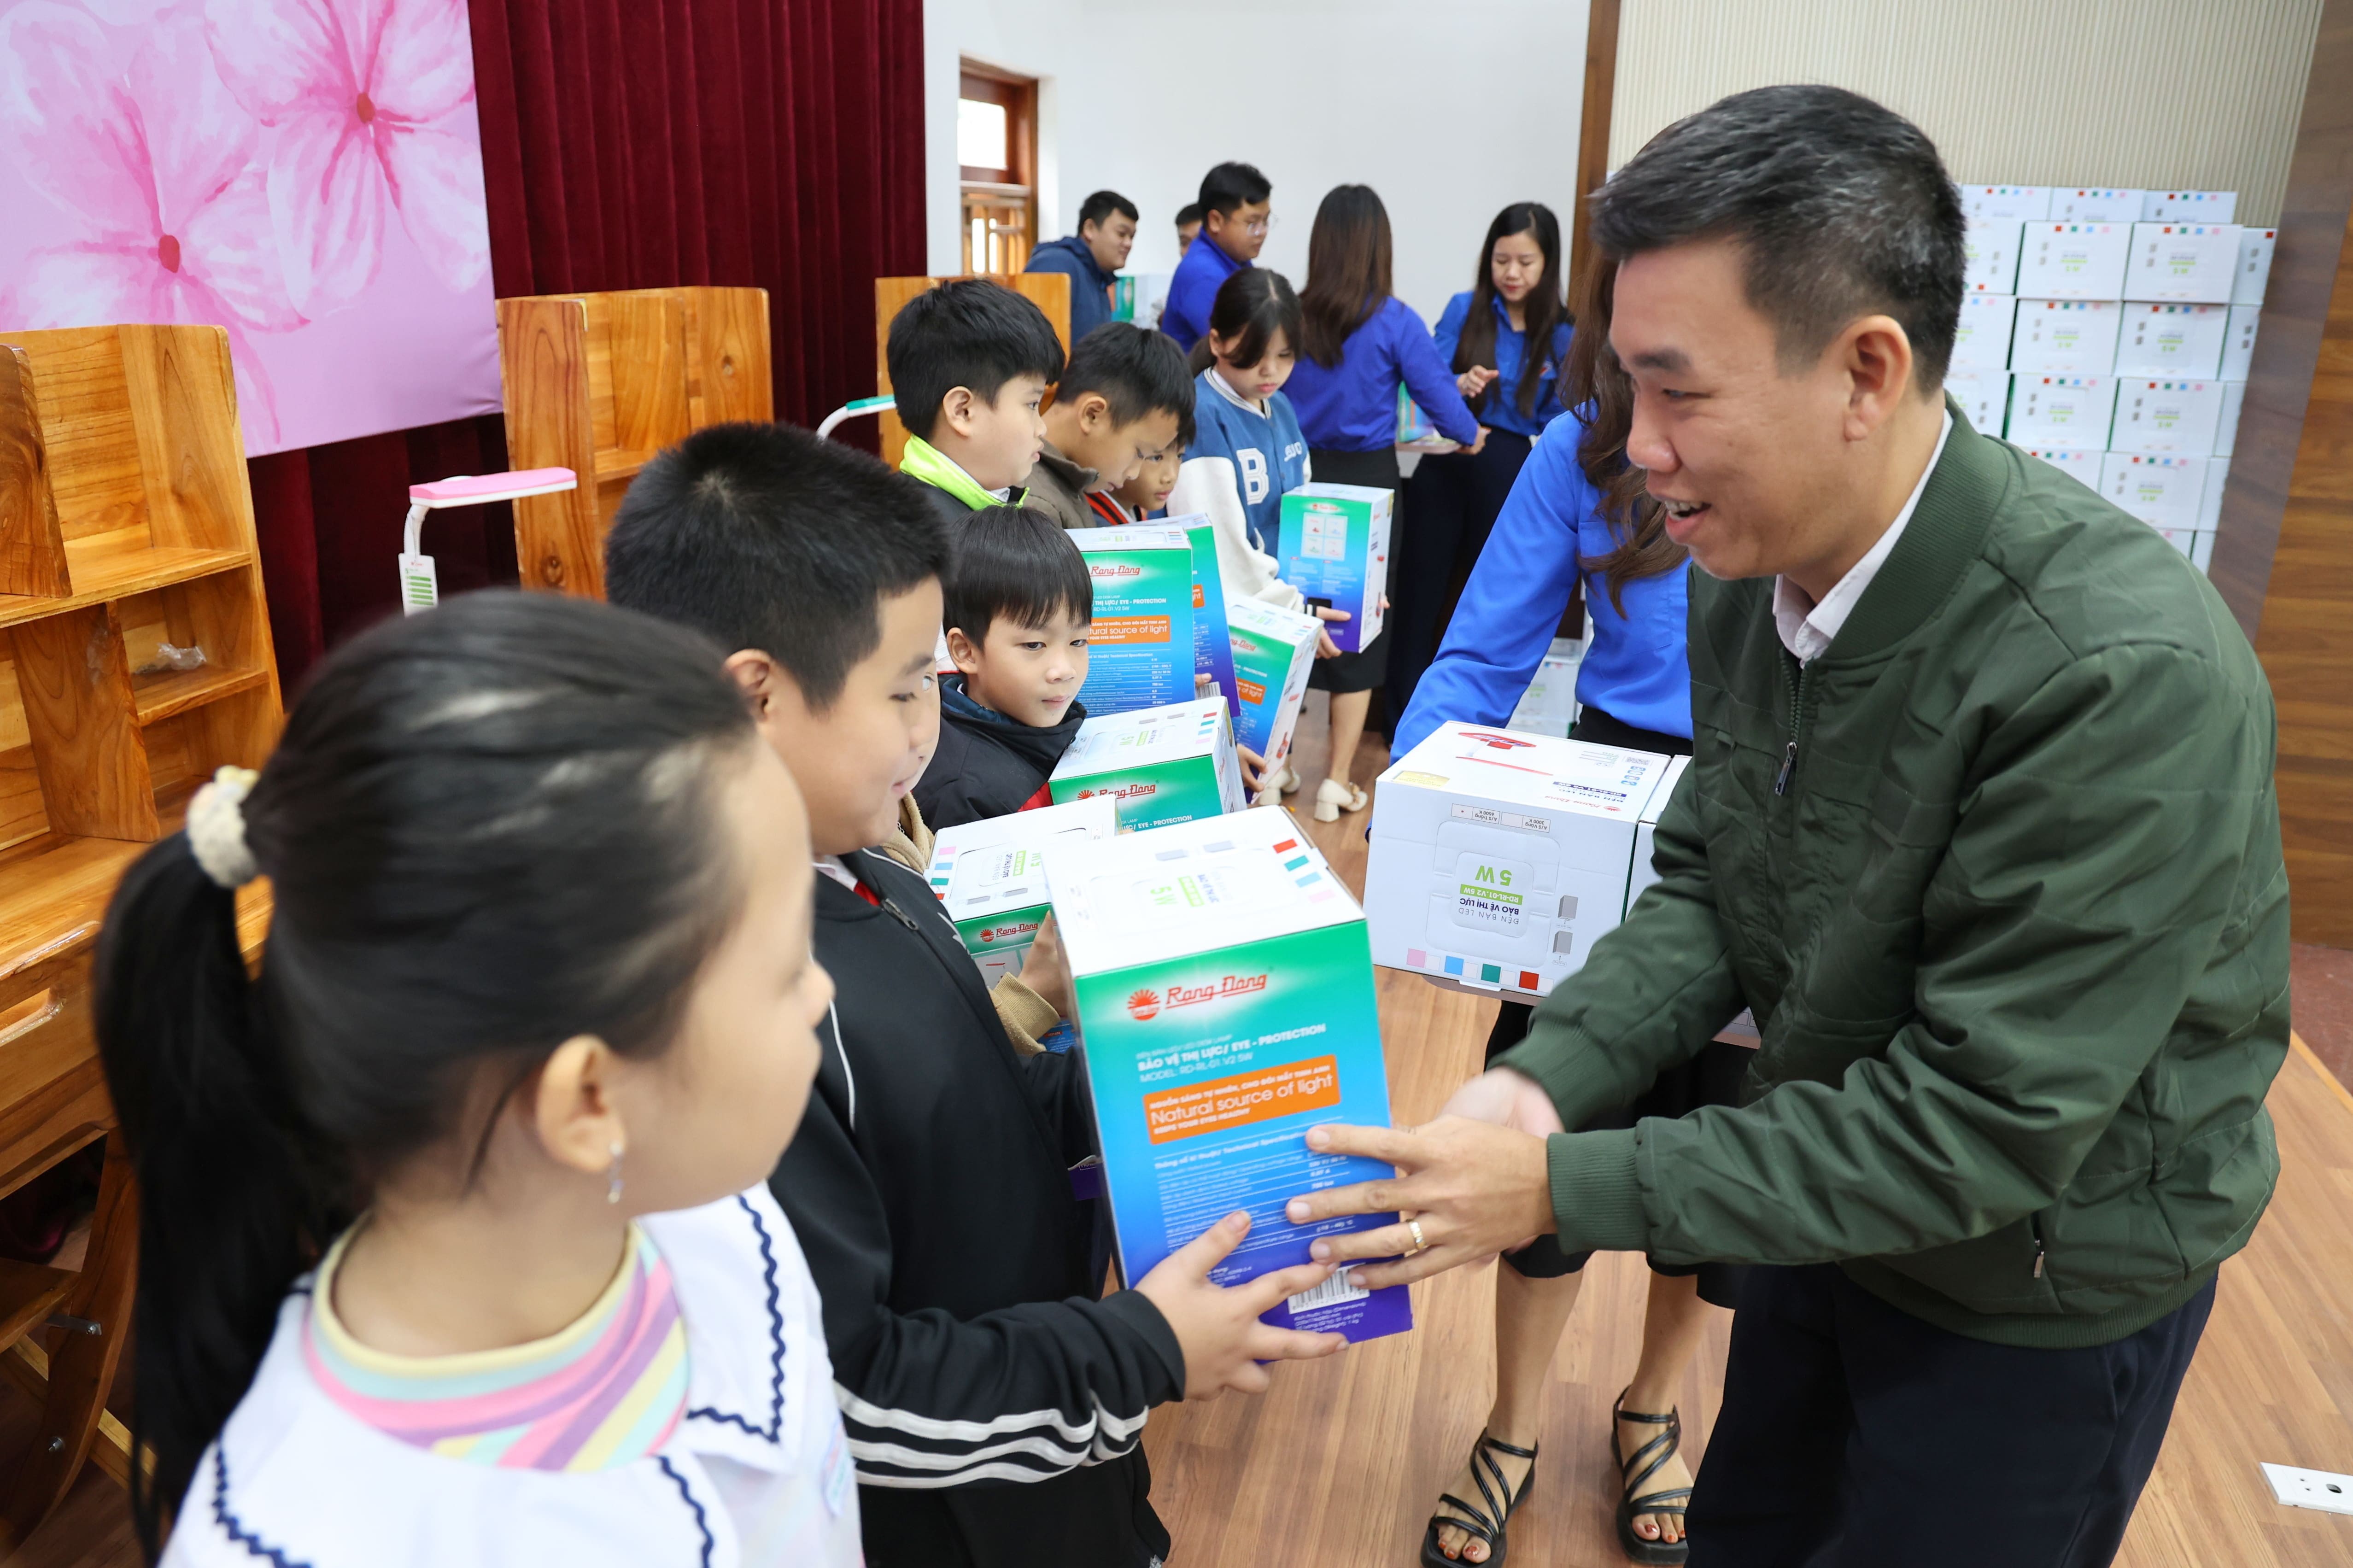 Ông Nguyễn Binh Nam - Phó Bí thư Thường trực Đảng ủy, Trưởng Ban Truyền thông EVNCPC trao tặng đèn học và góc học tập cho các em